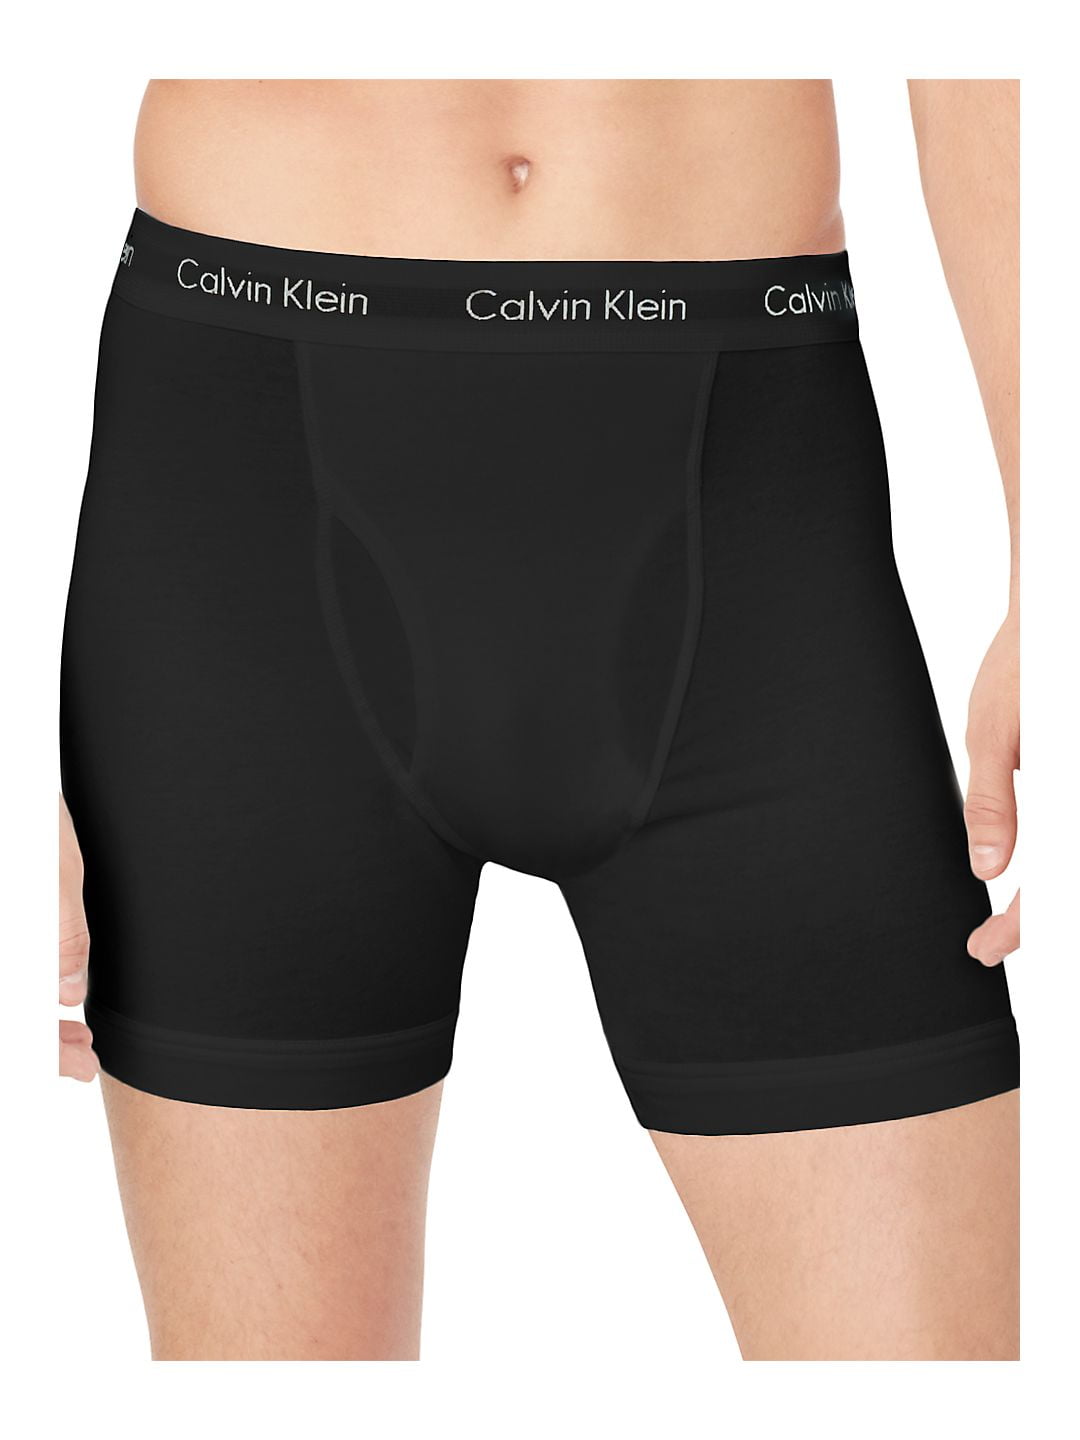 Calvin Klein Men's Cotton Stretch Boxer Brief (3-Pack)